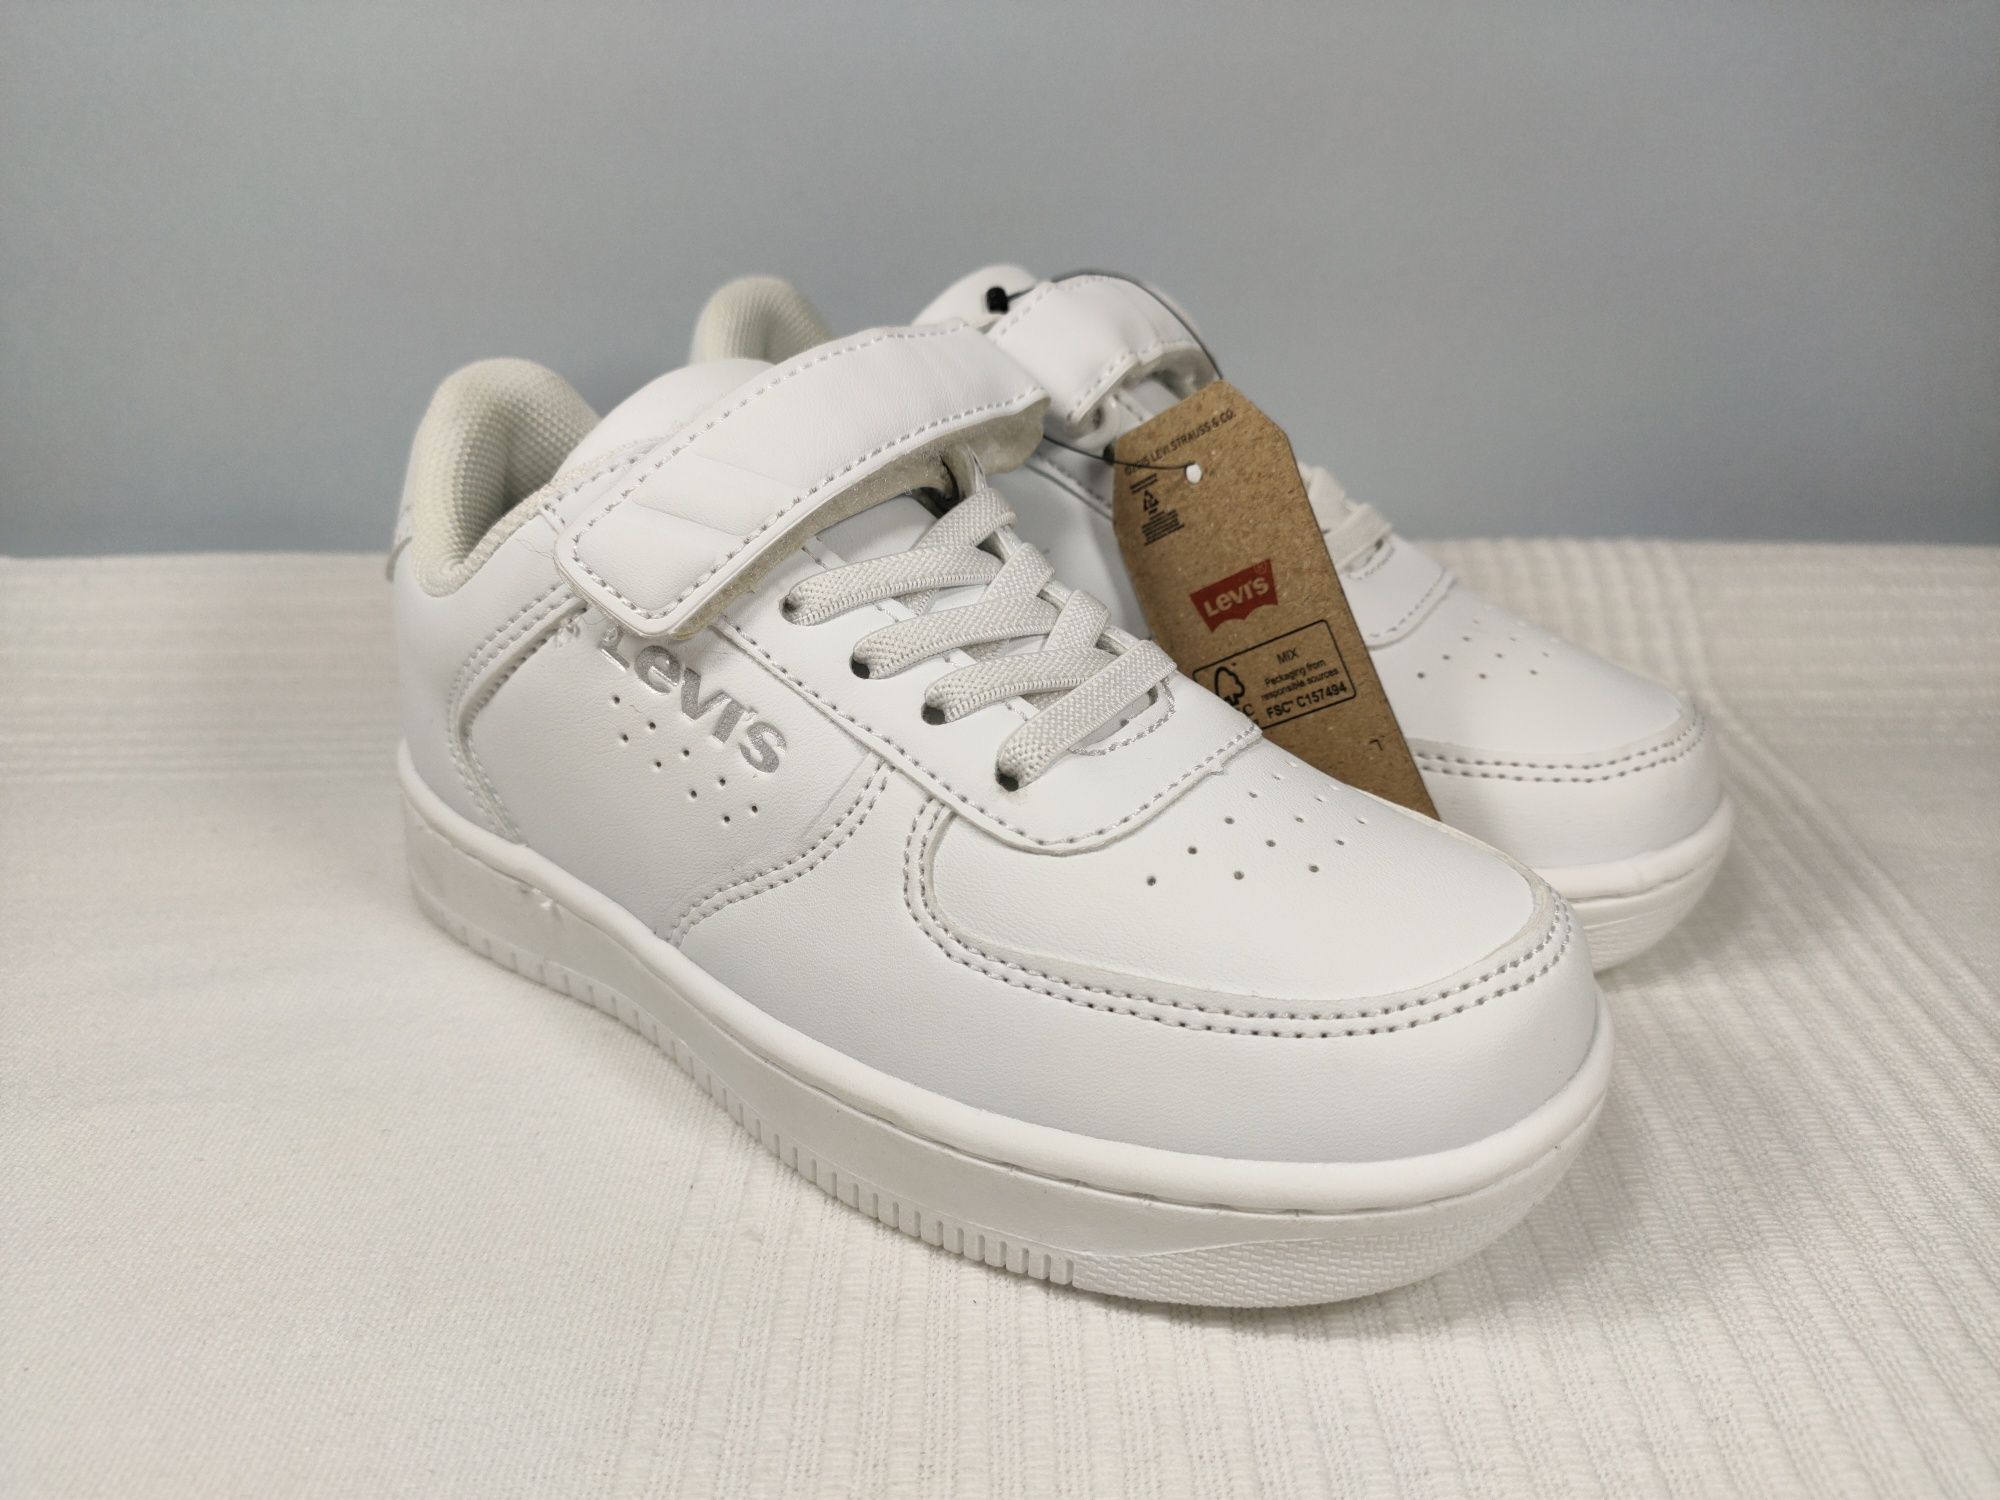 Buty Levi's dziecięce młodzieżowe skórzane białe r. 31 20,5cm